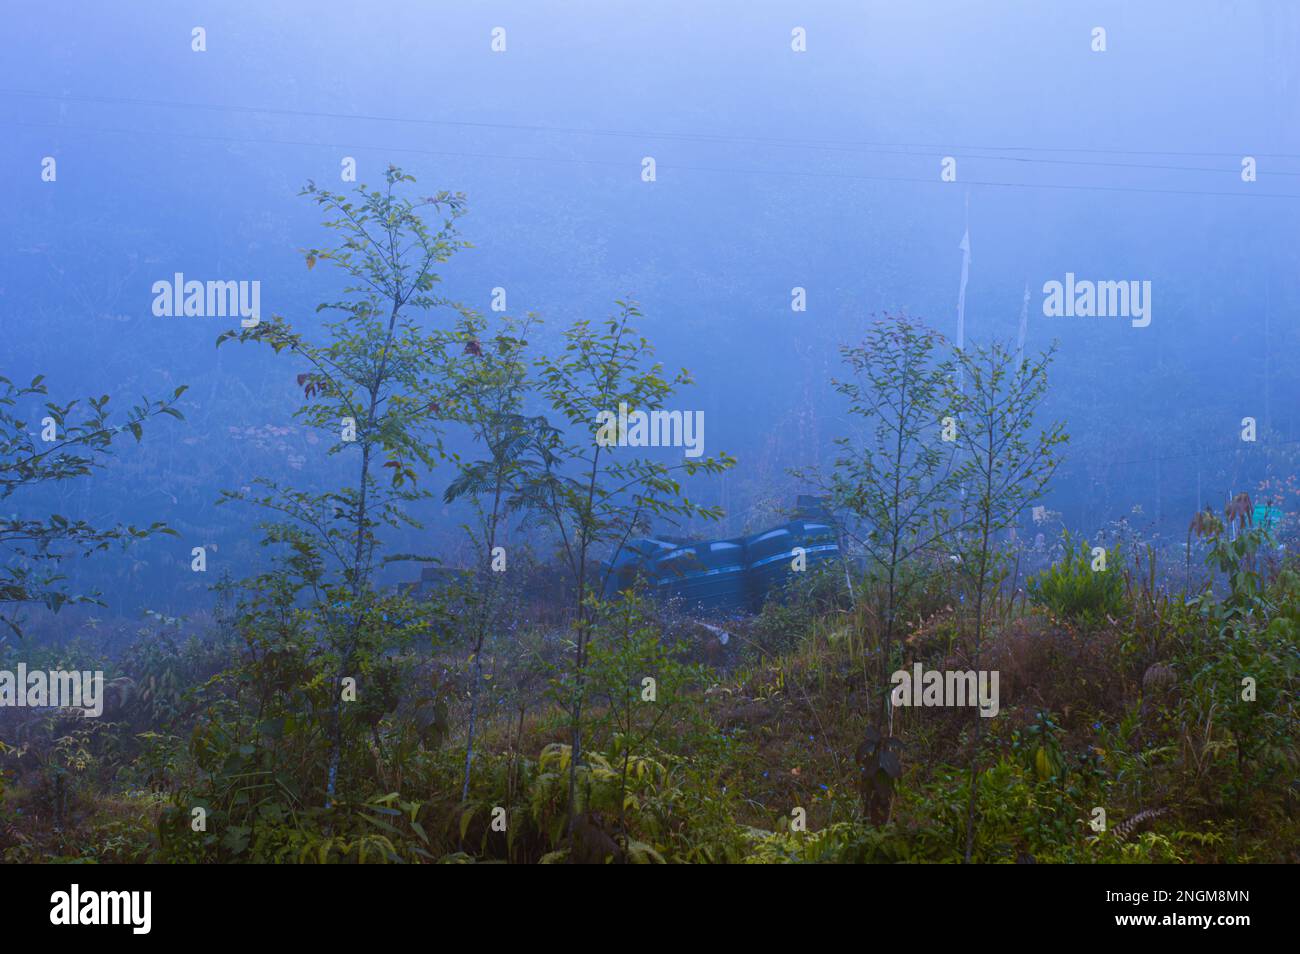 Bäume in einem dichten, nebligen Bergwald. Wintersaison. Blaue Kälte. Dezember. Stockfoto